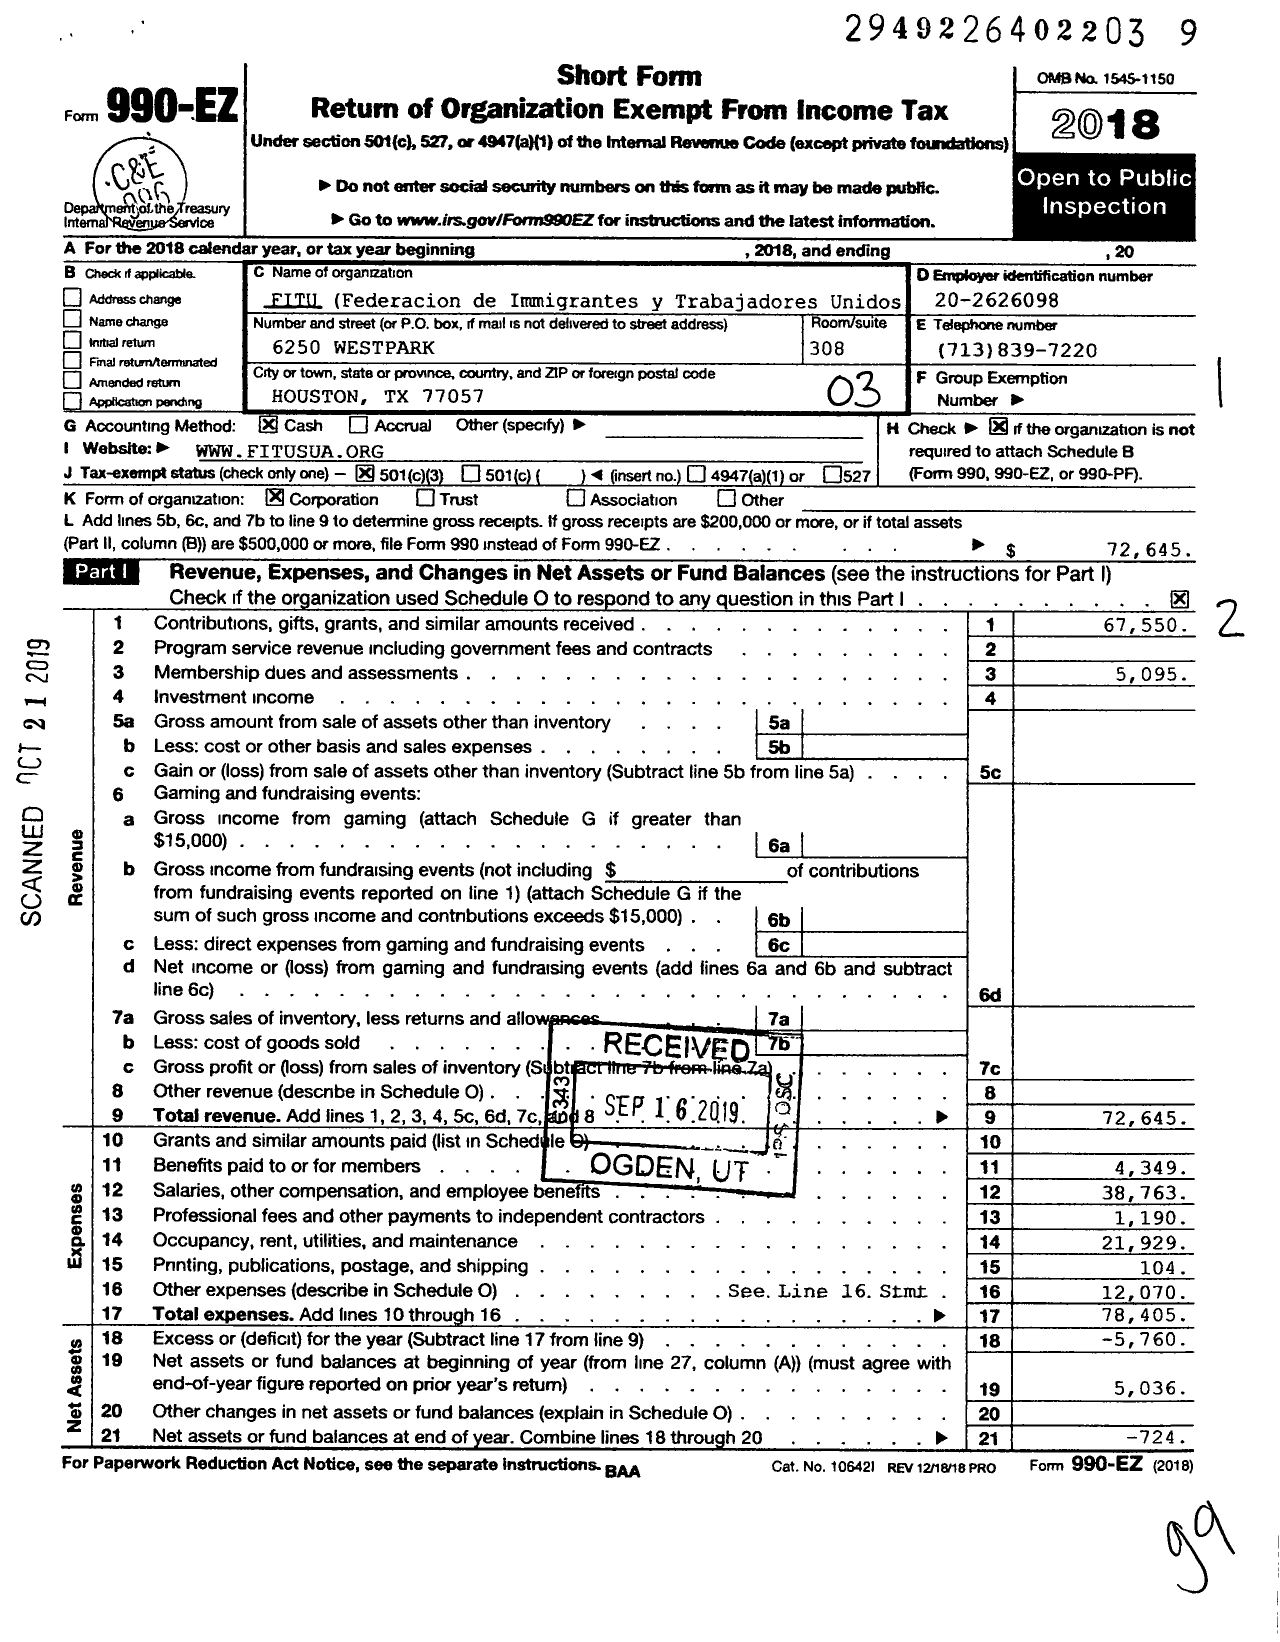 Image of first page of 2018 Form 990EZ for FITU (Federacion de Immigrantes y Trabajadores Unidos